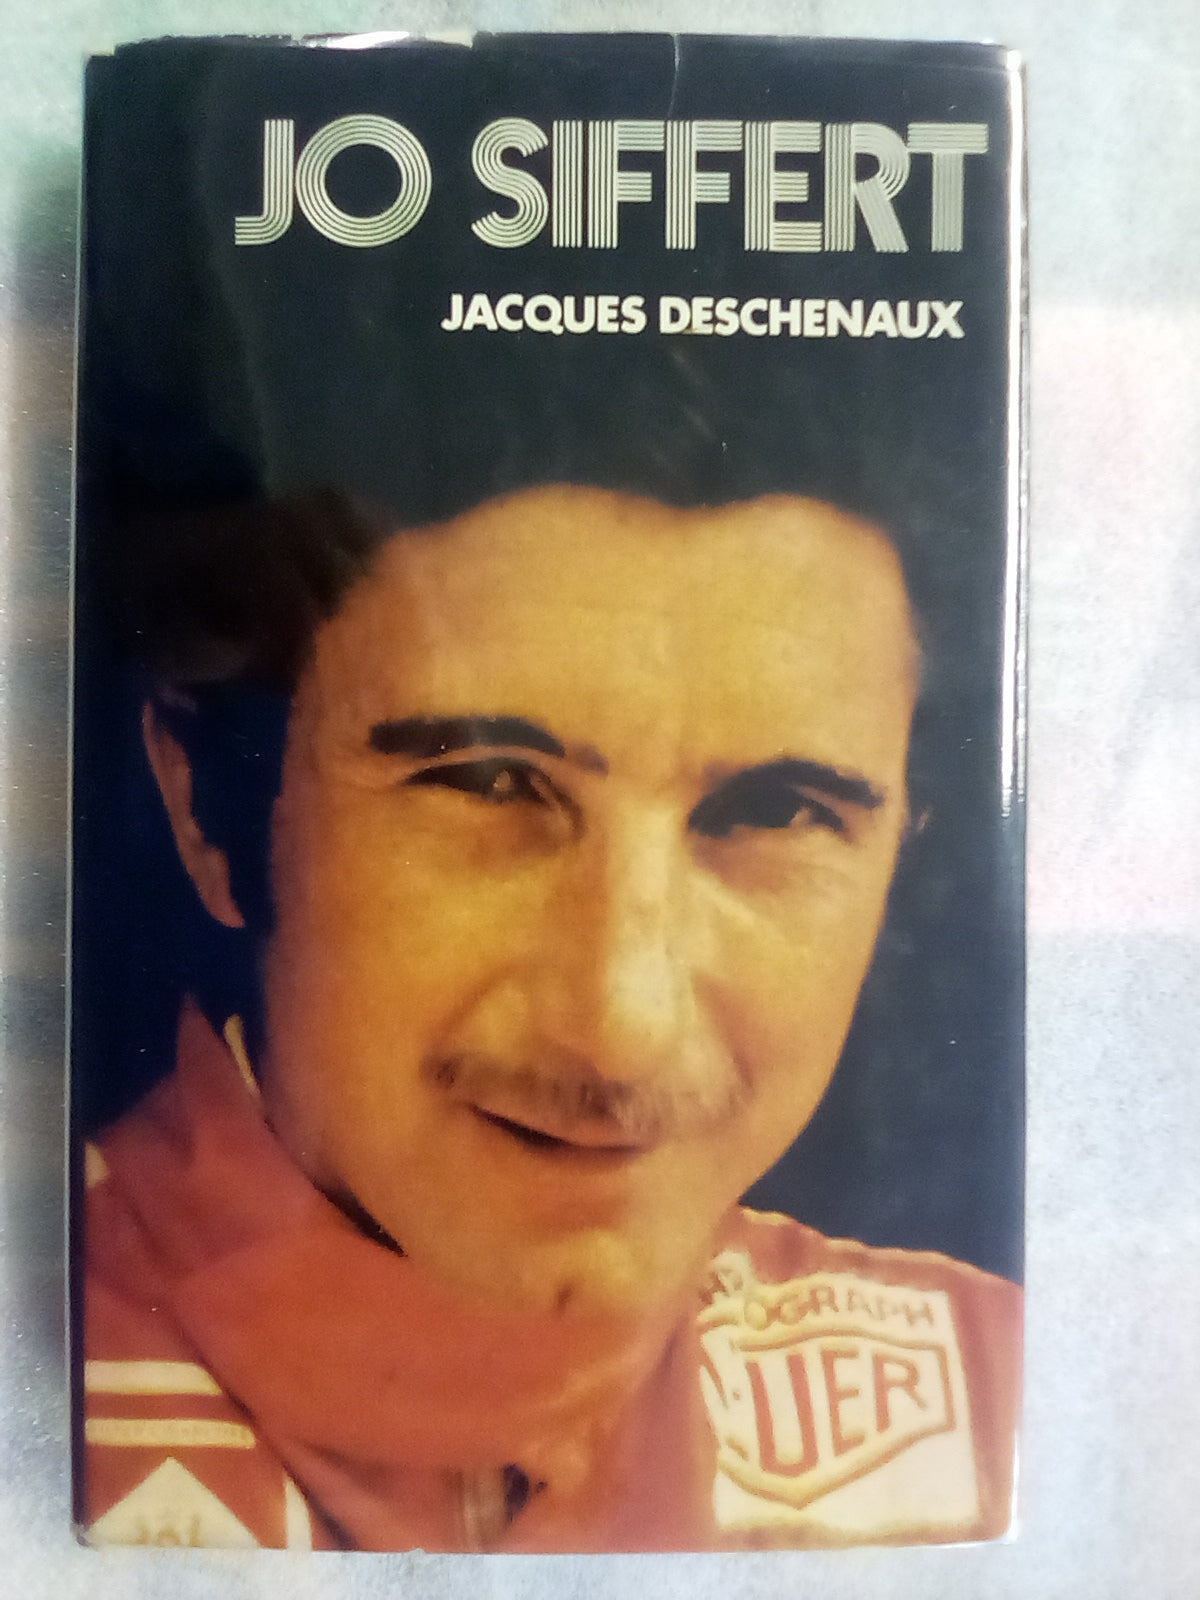 Jo Siffert Biography by Jacques Deschenaux (1972)